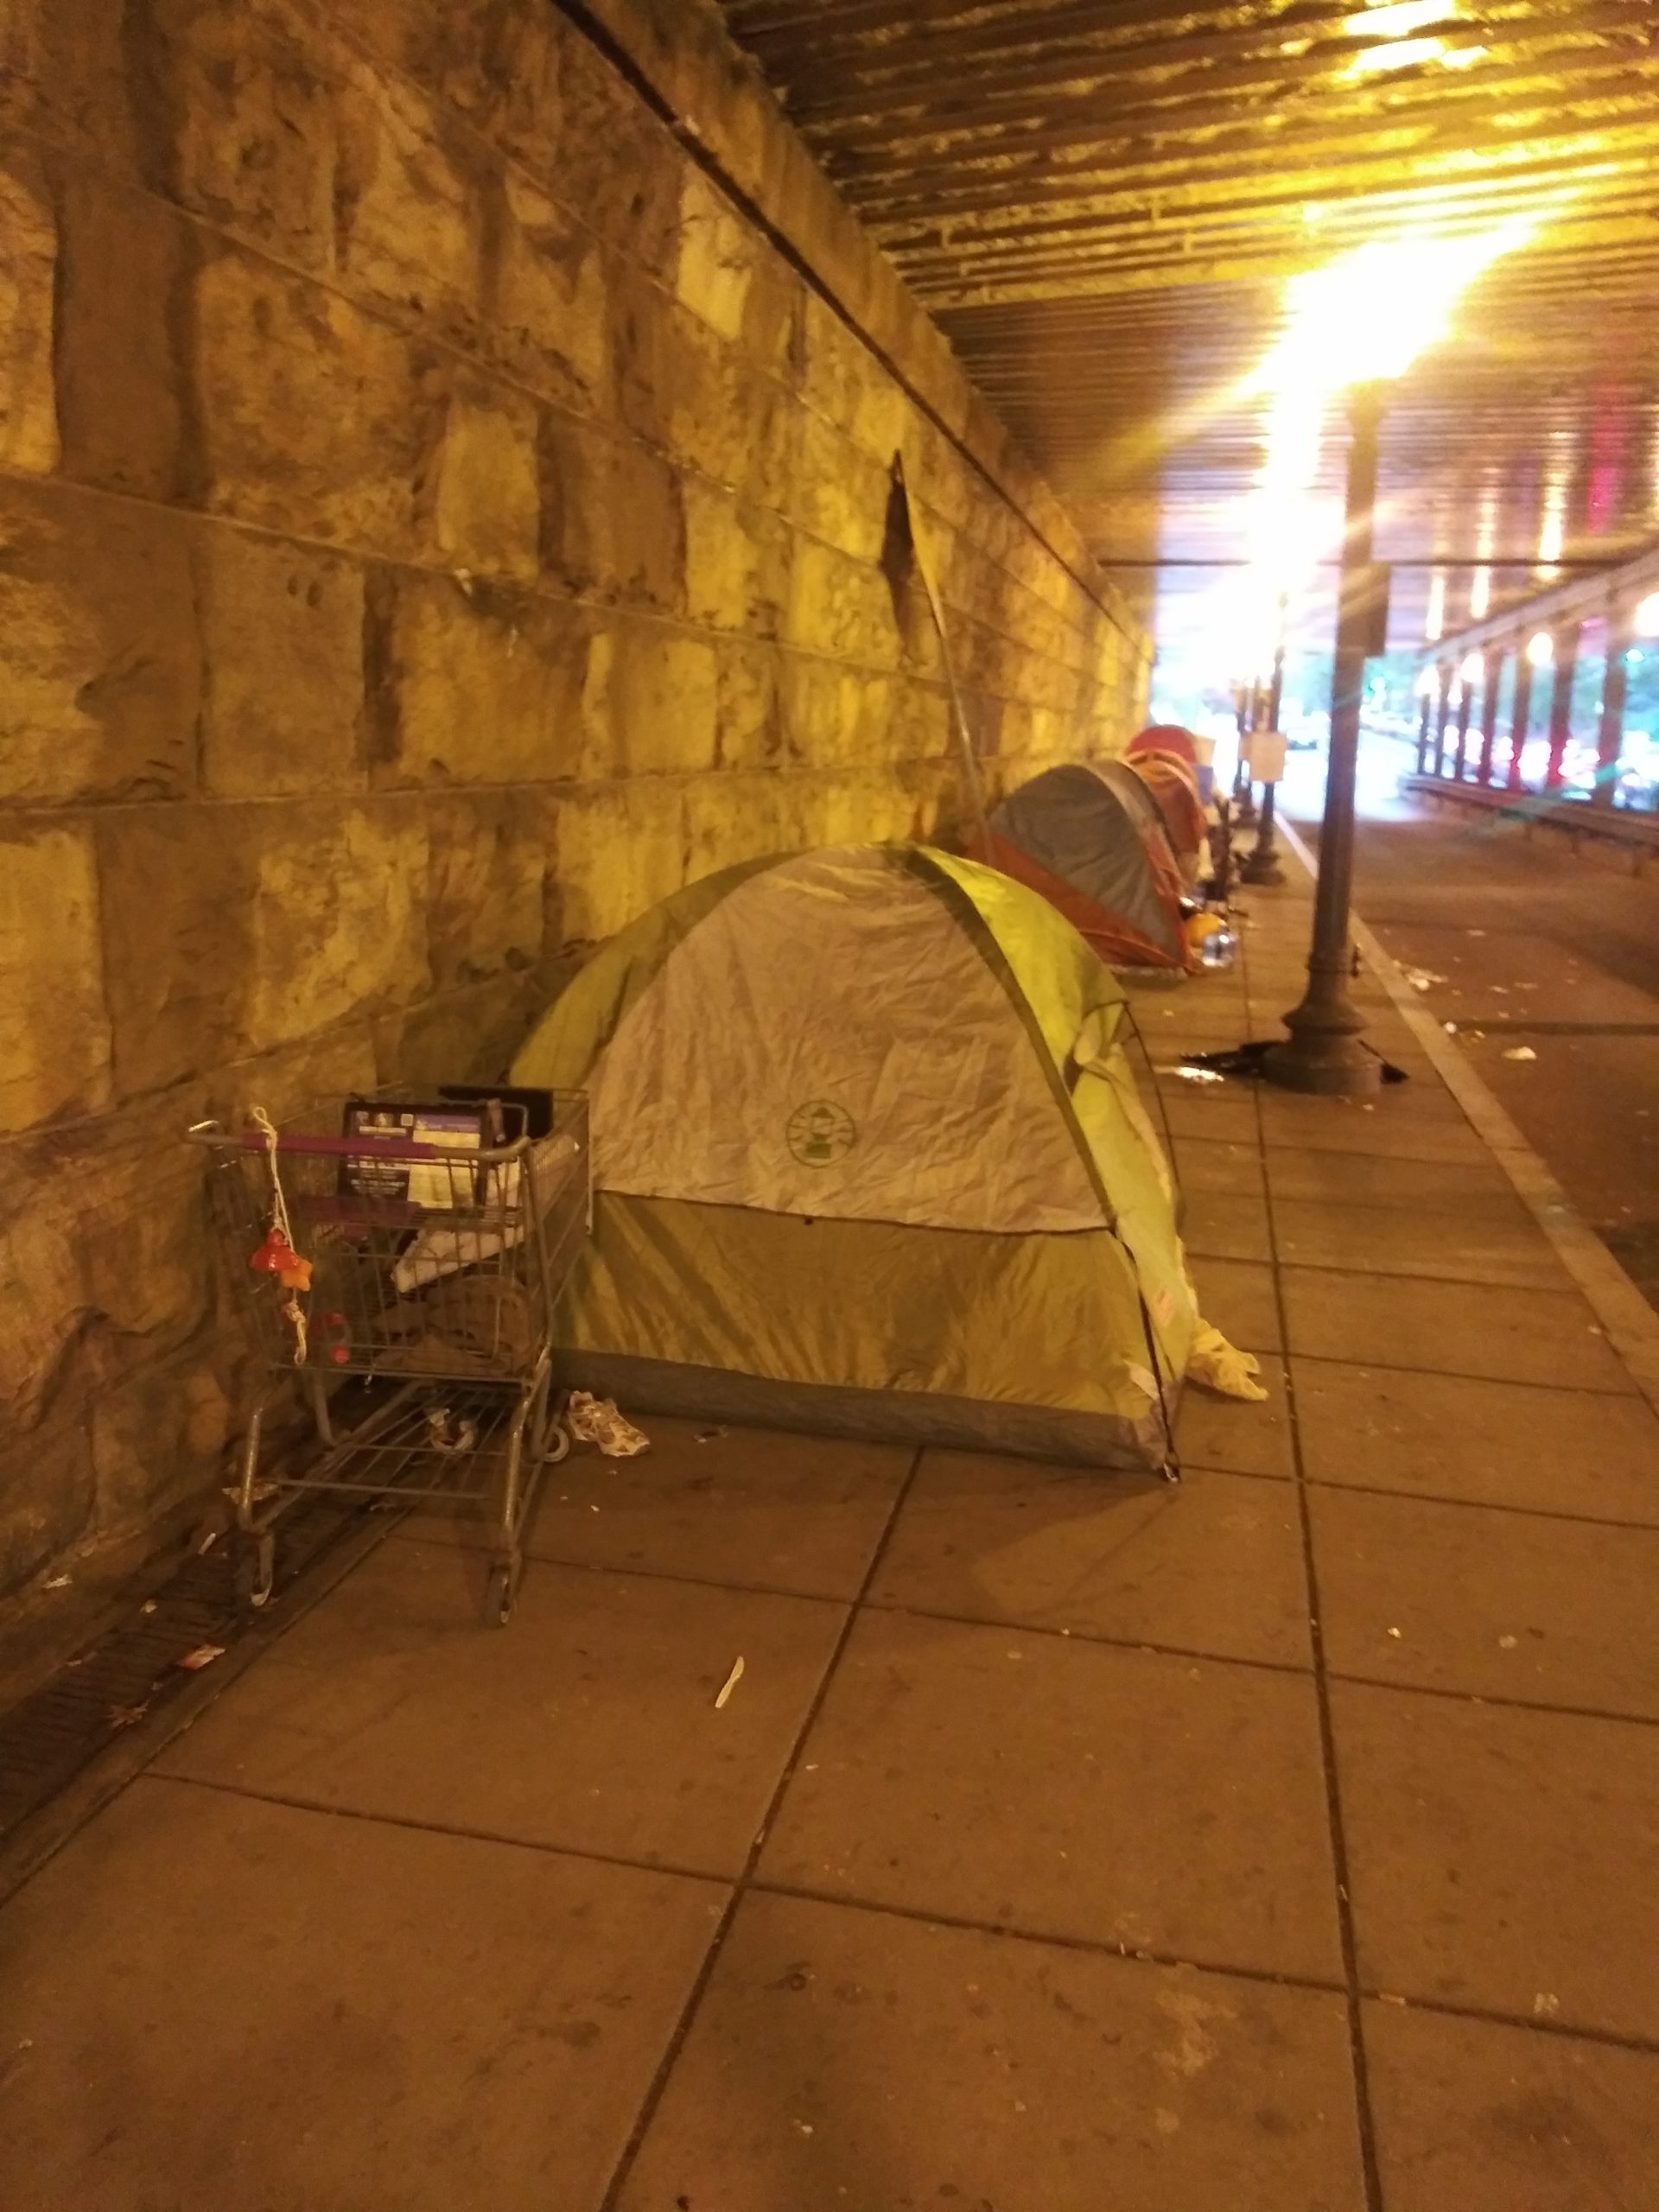 Homeless Encampment Under Railroad Bridge On K And 1st Ne Washington Dc Homeless Lives Matter